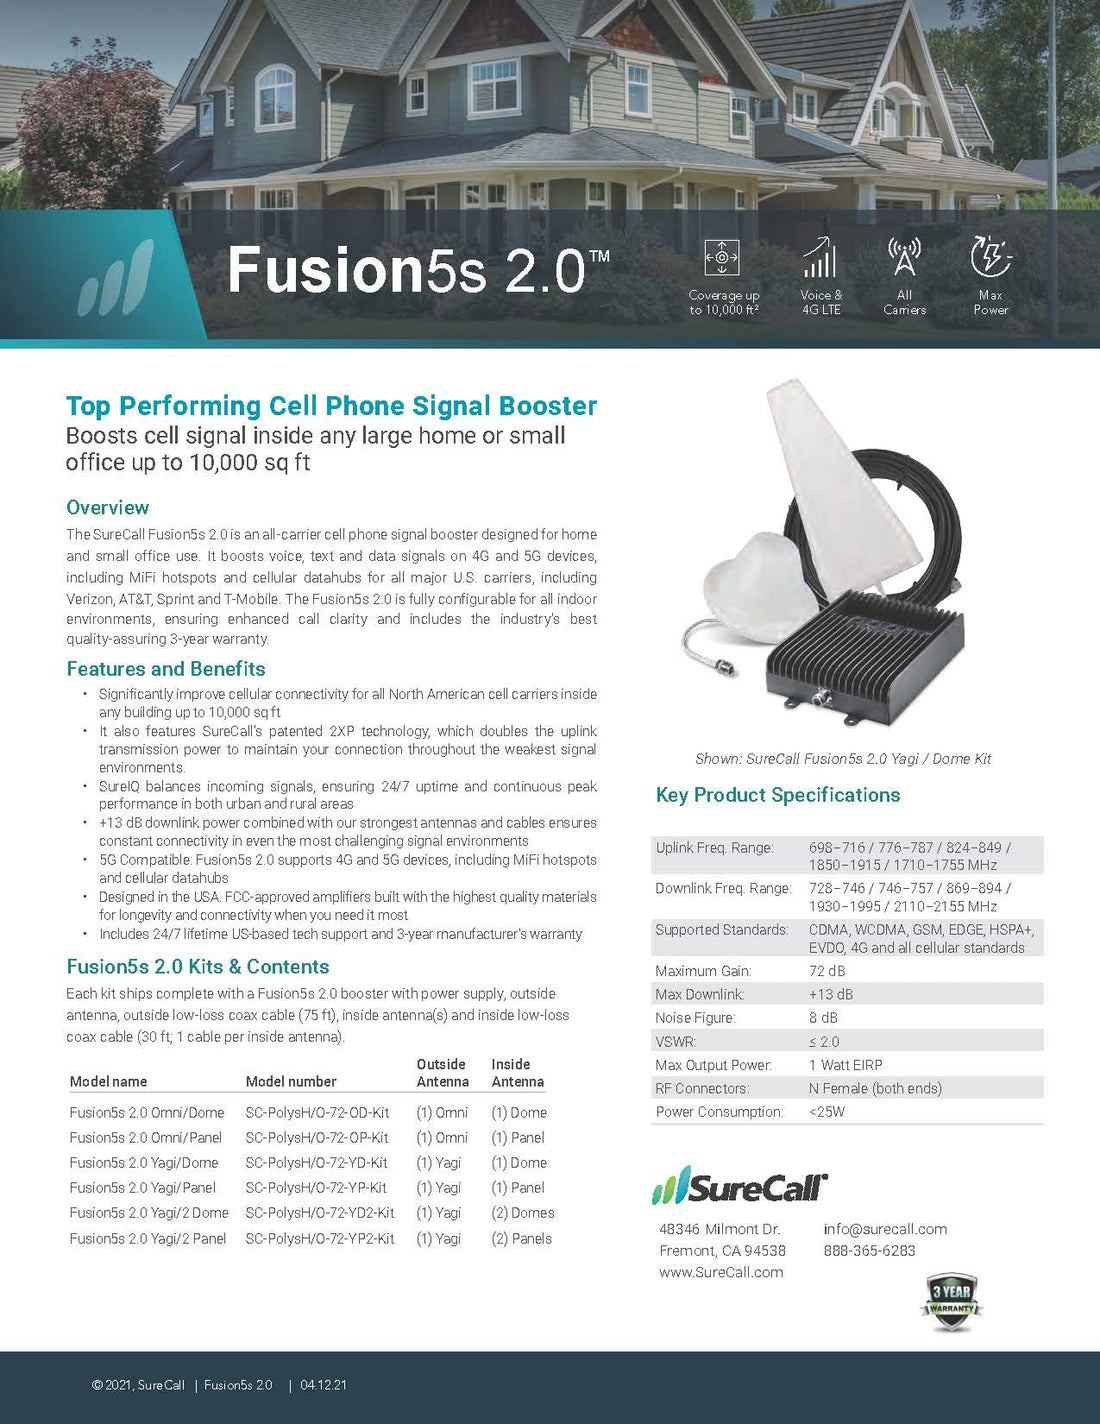 Fusion5s Yagi/Dome Kit